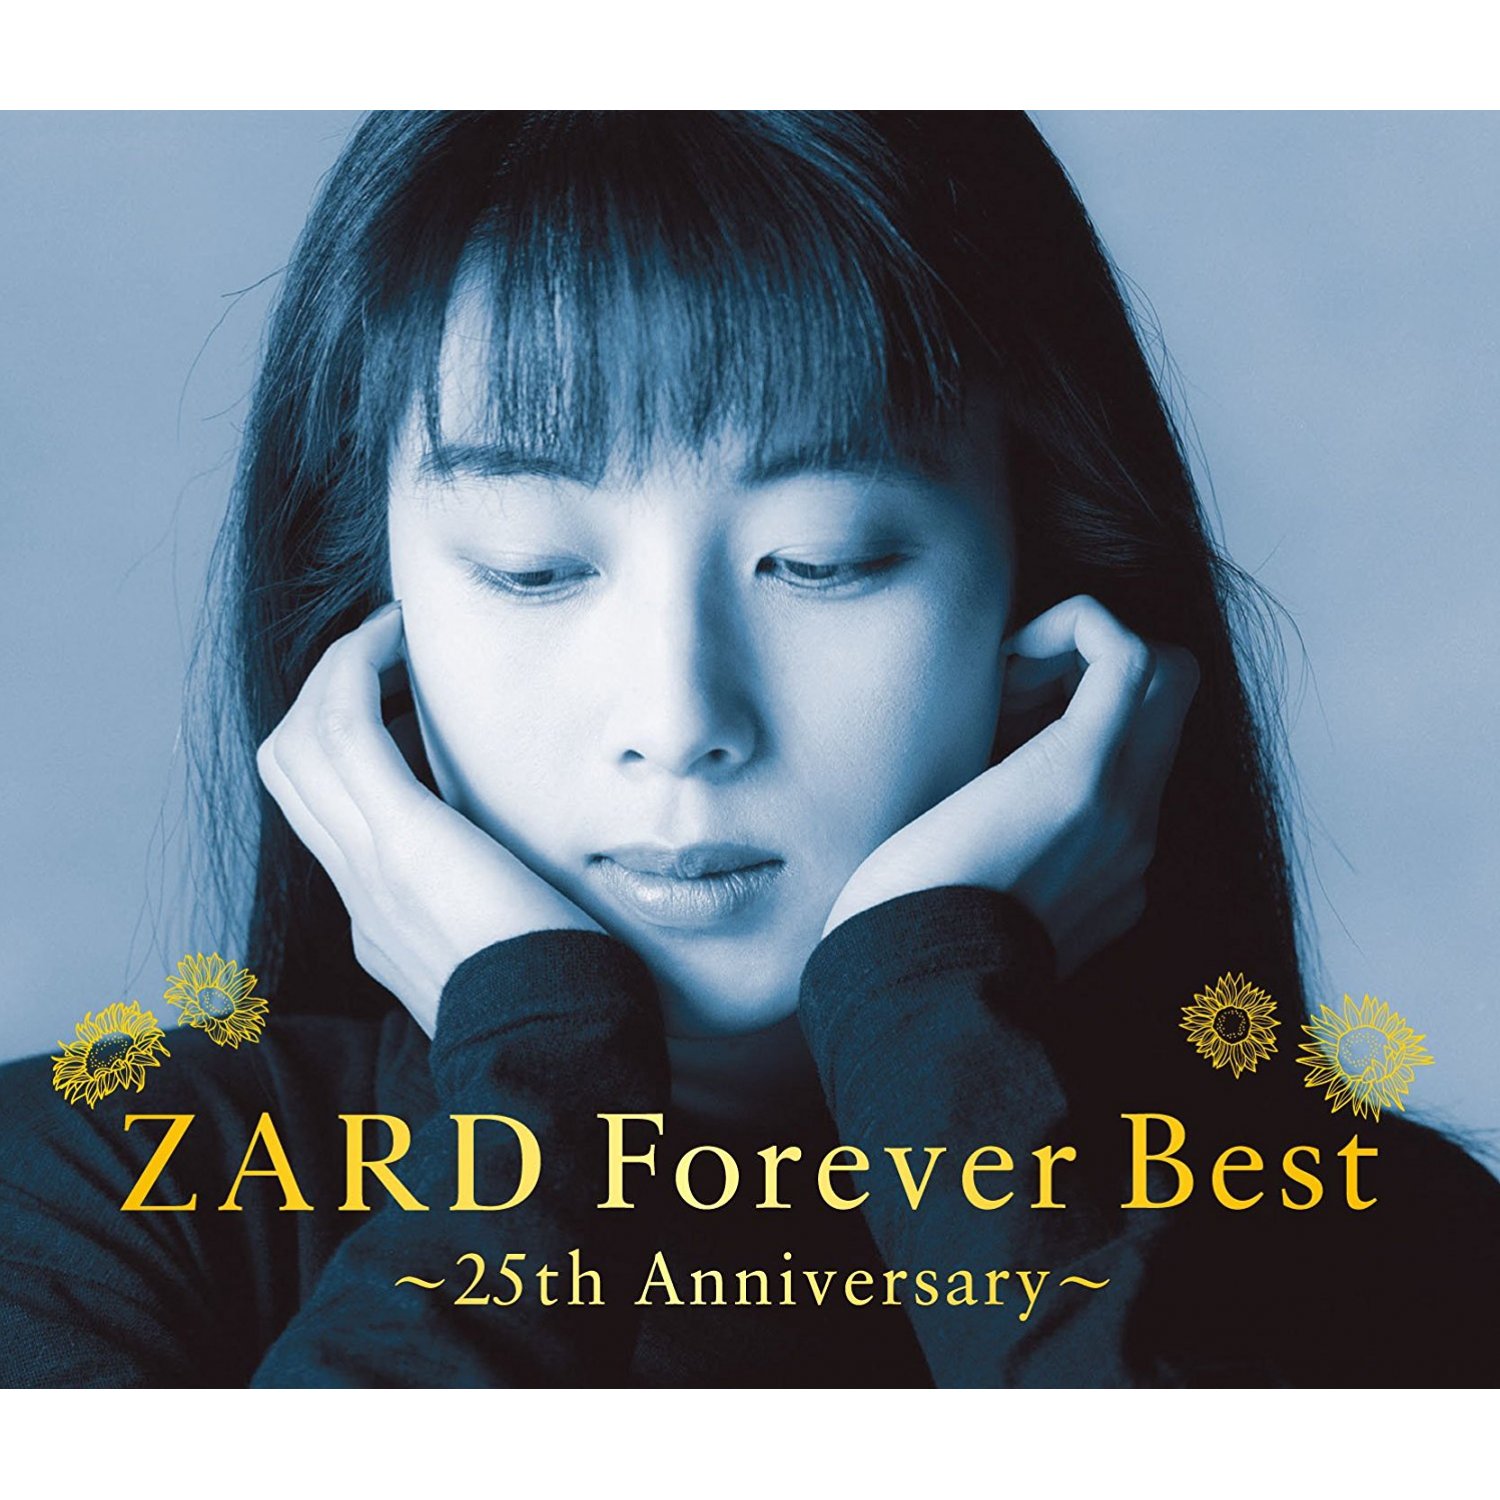 zard single collection 20th anniversary RARE